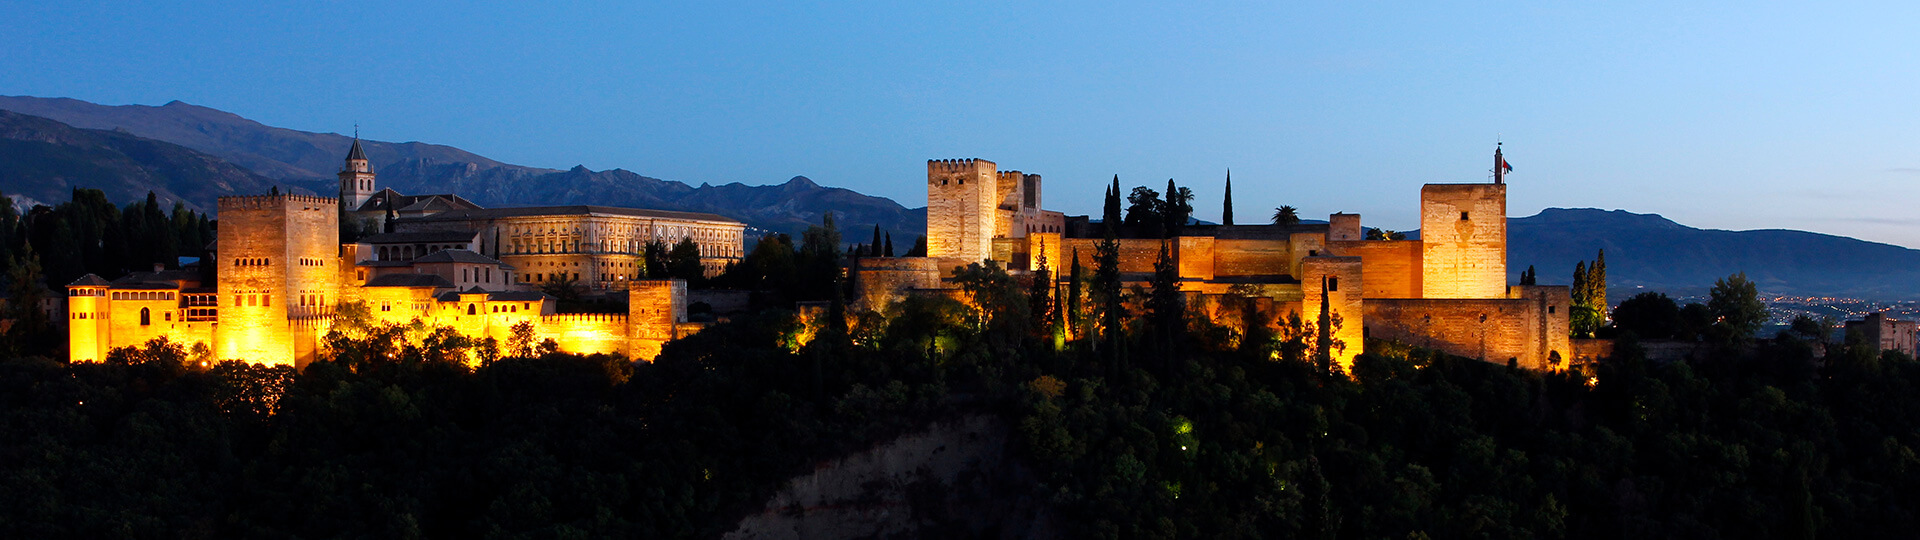 Vista panorâmica da Alhambra de Granada à noite